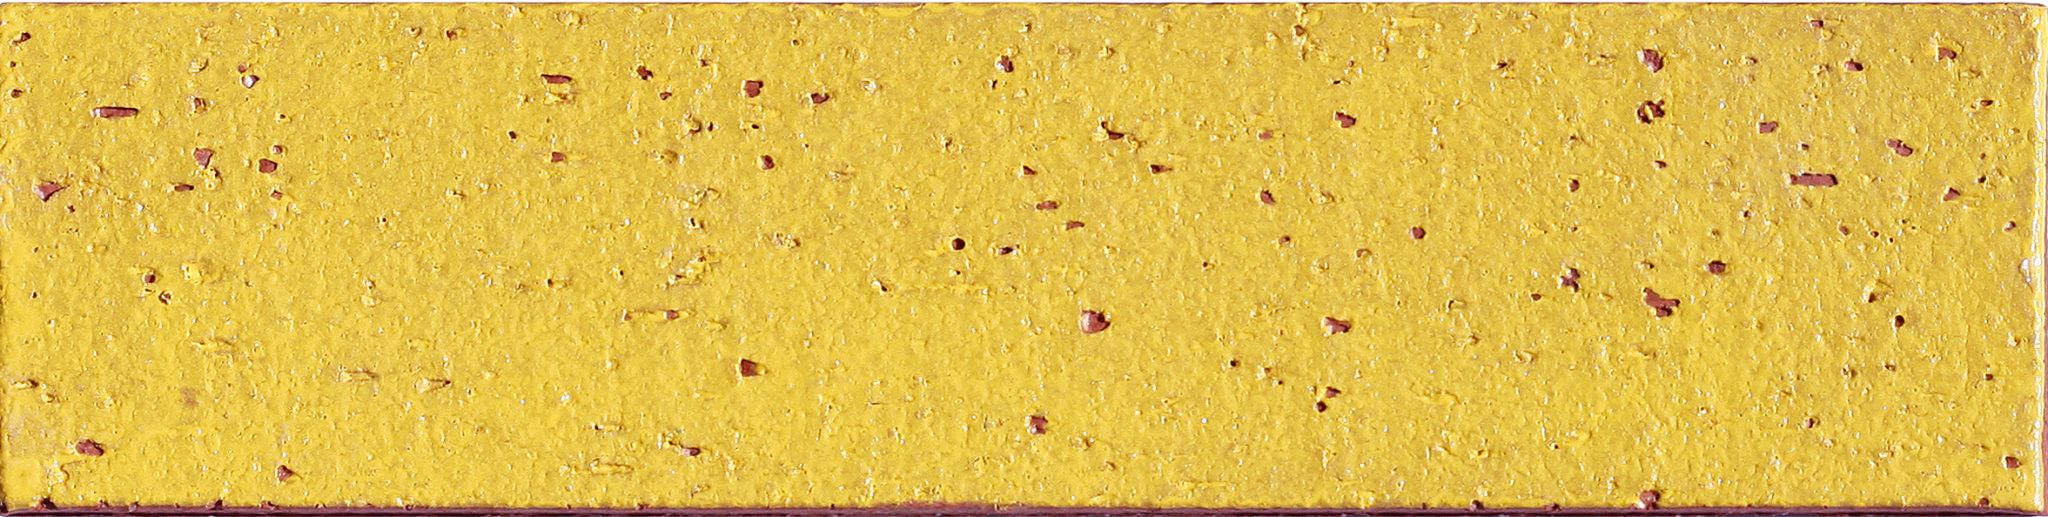 DJ - Morrocotto Yellow Subway Tile